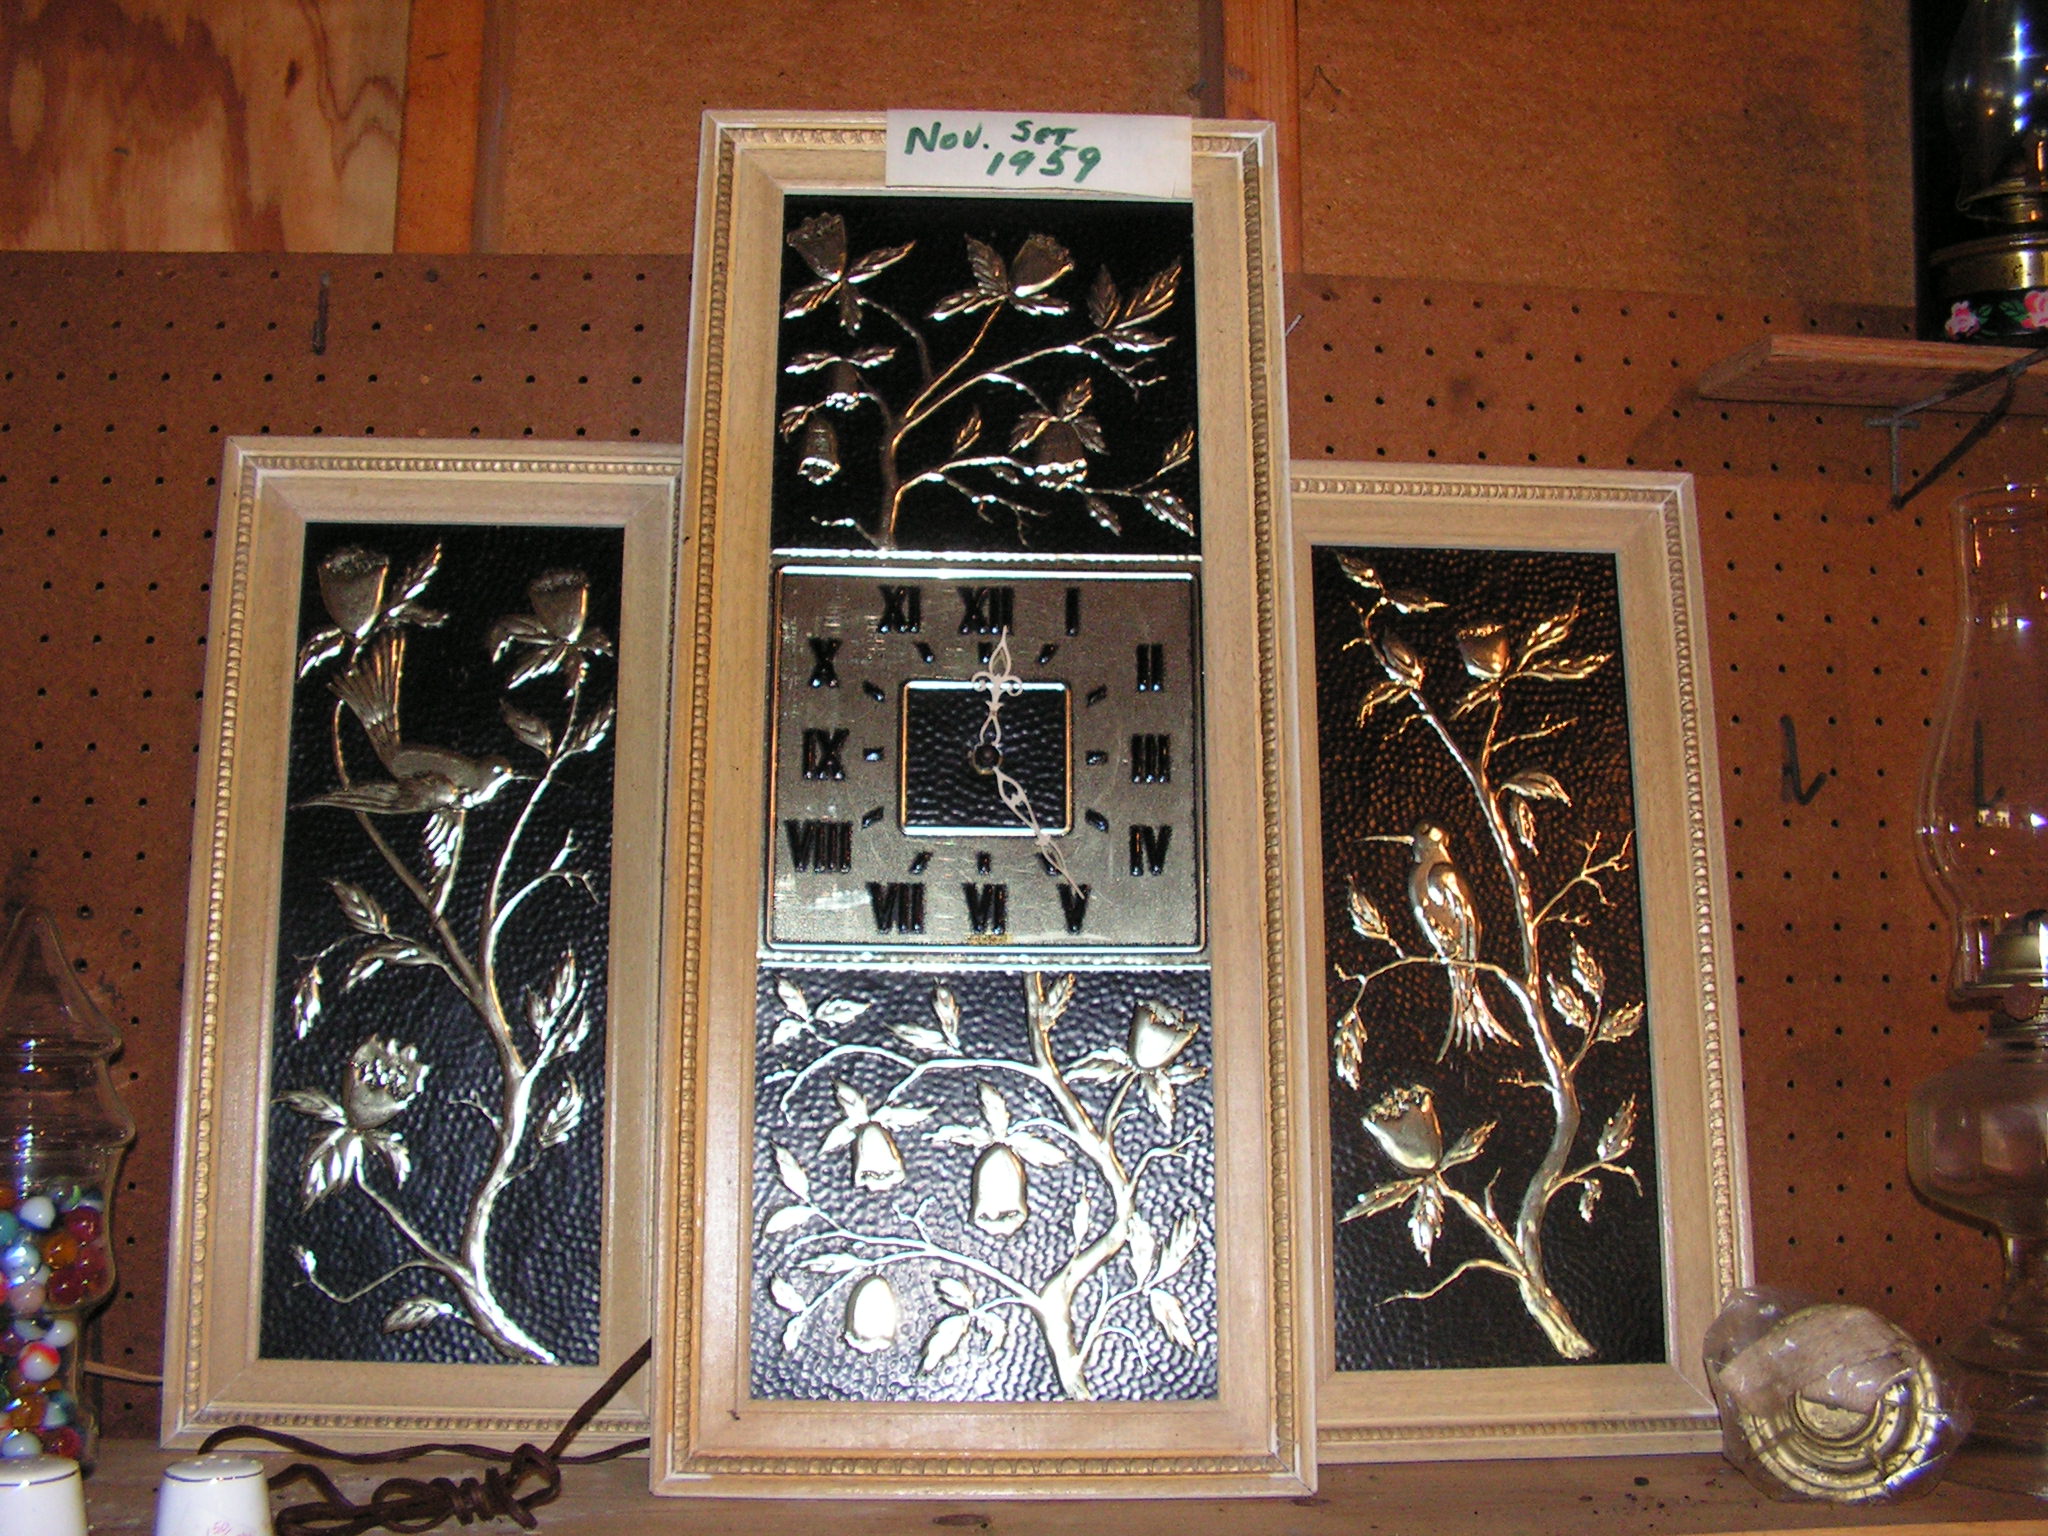 3 piece Novelty Set in wood frames